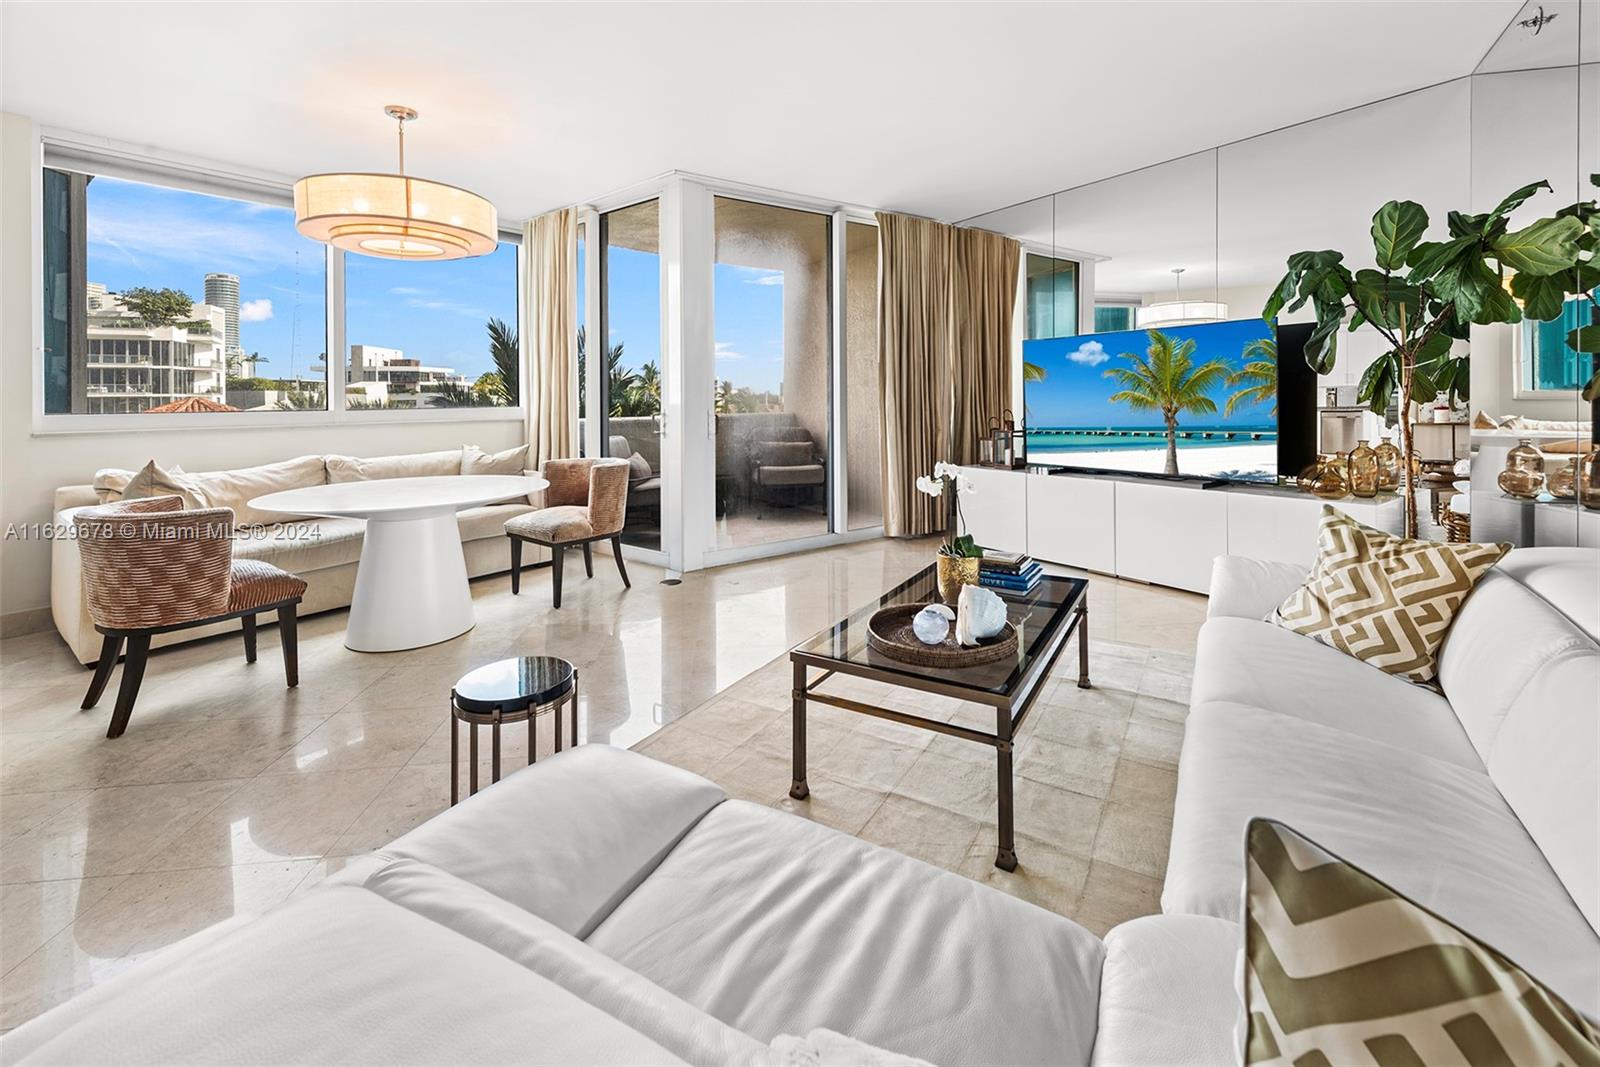 Rental Property at 300 S Pointe Dr 504, Miami Beach, Miami-Dade County, Florida - Bedrooms: 2 
Bathrooms: 2  - $8,500 MO.